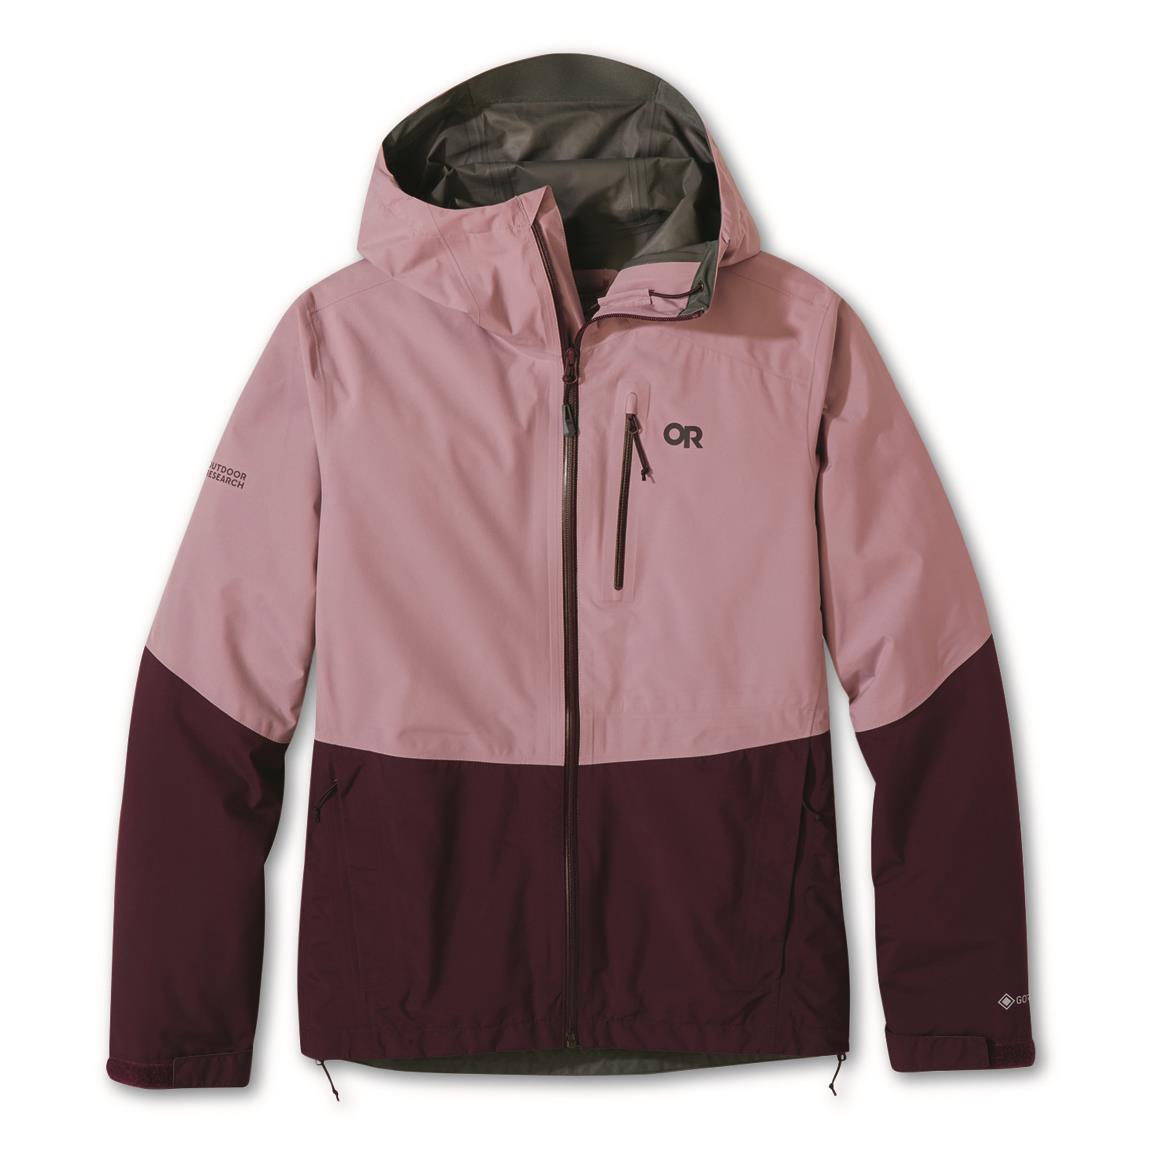 Outdoor Research Women's Aspire II Waterproof Jacket, GORE-TEX, Moth/elk